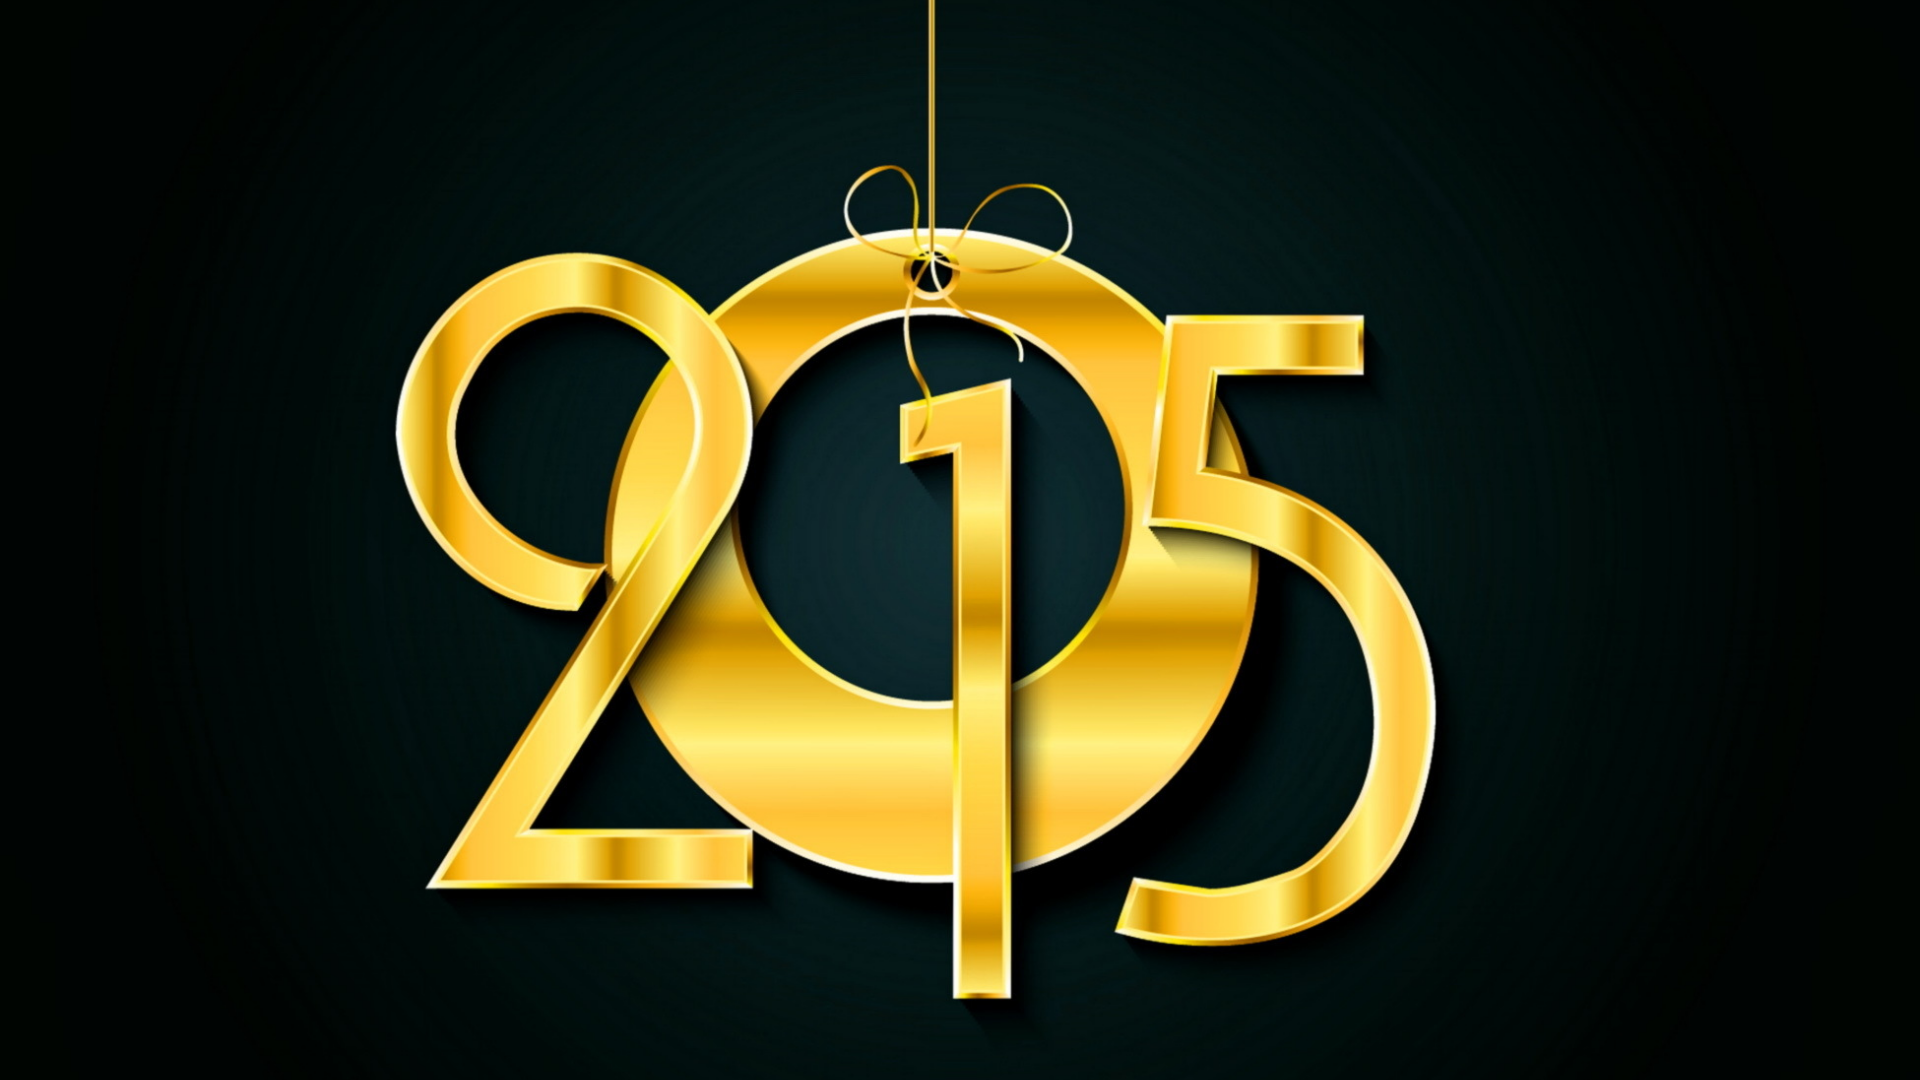 цифры, 2015, новый год, медальон